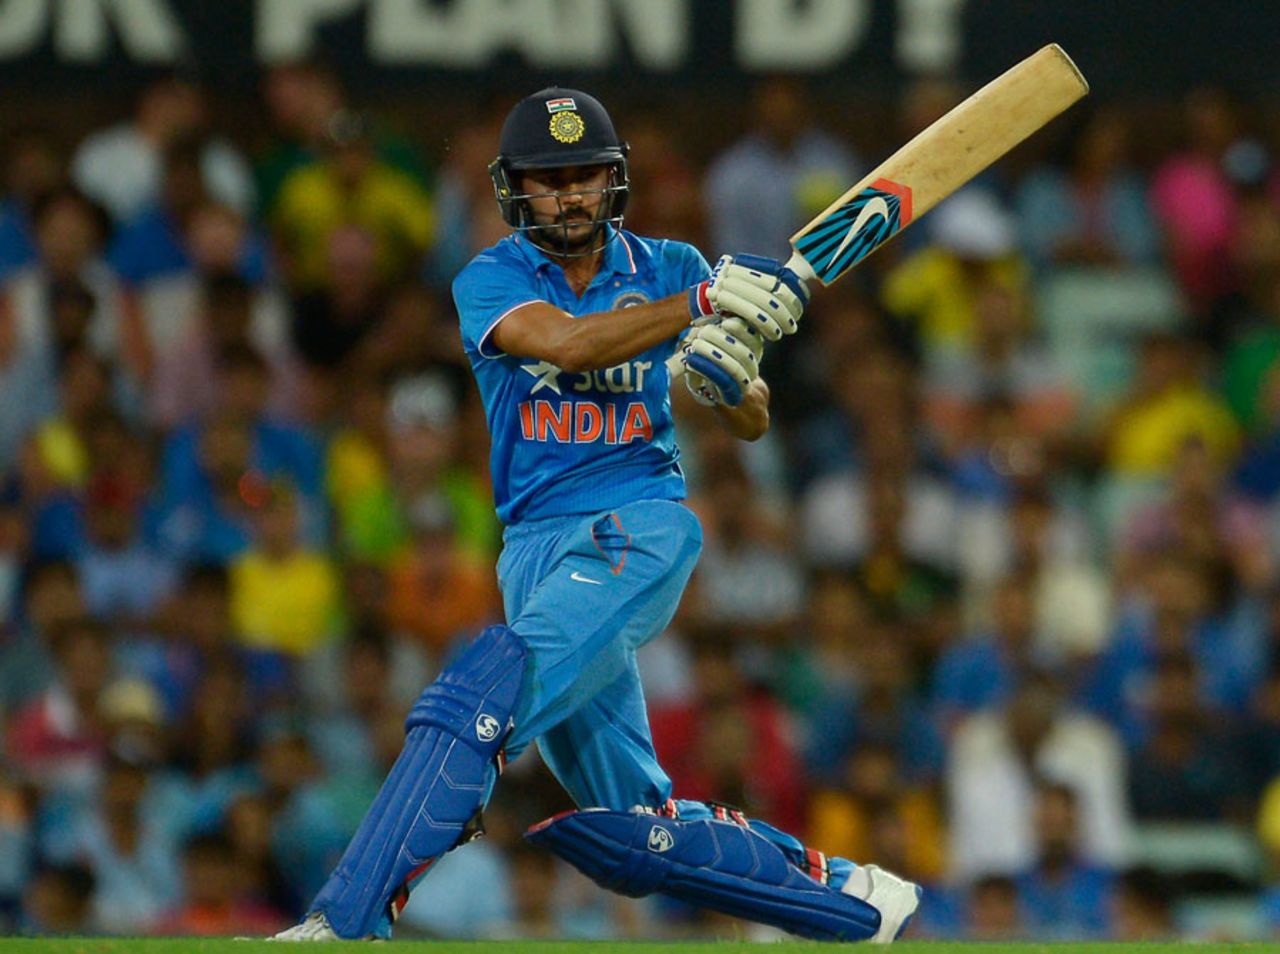 Manish Pandey produced a quick fifty, Australia v India, 5th ODI, Sydney, January 23, 2016